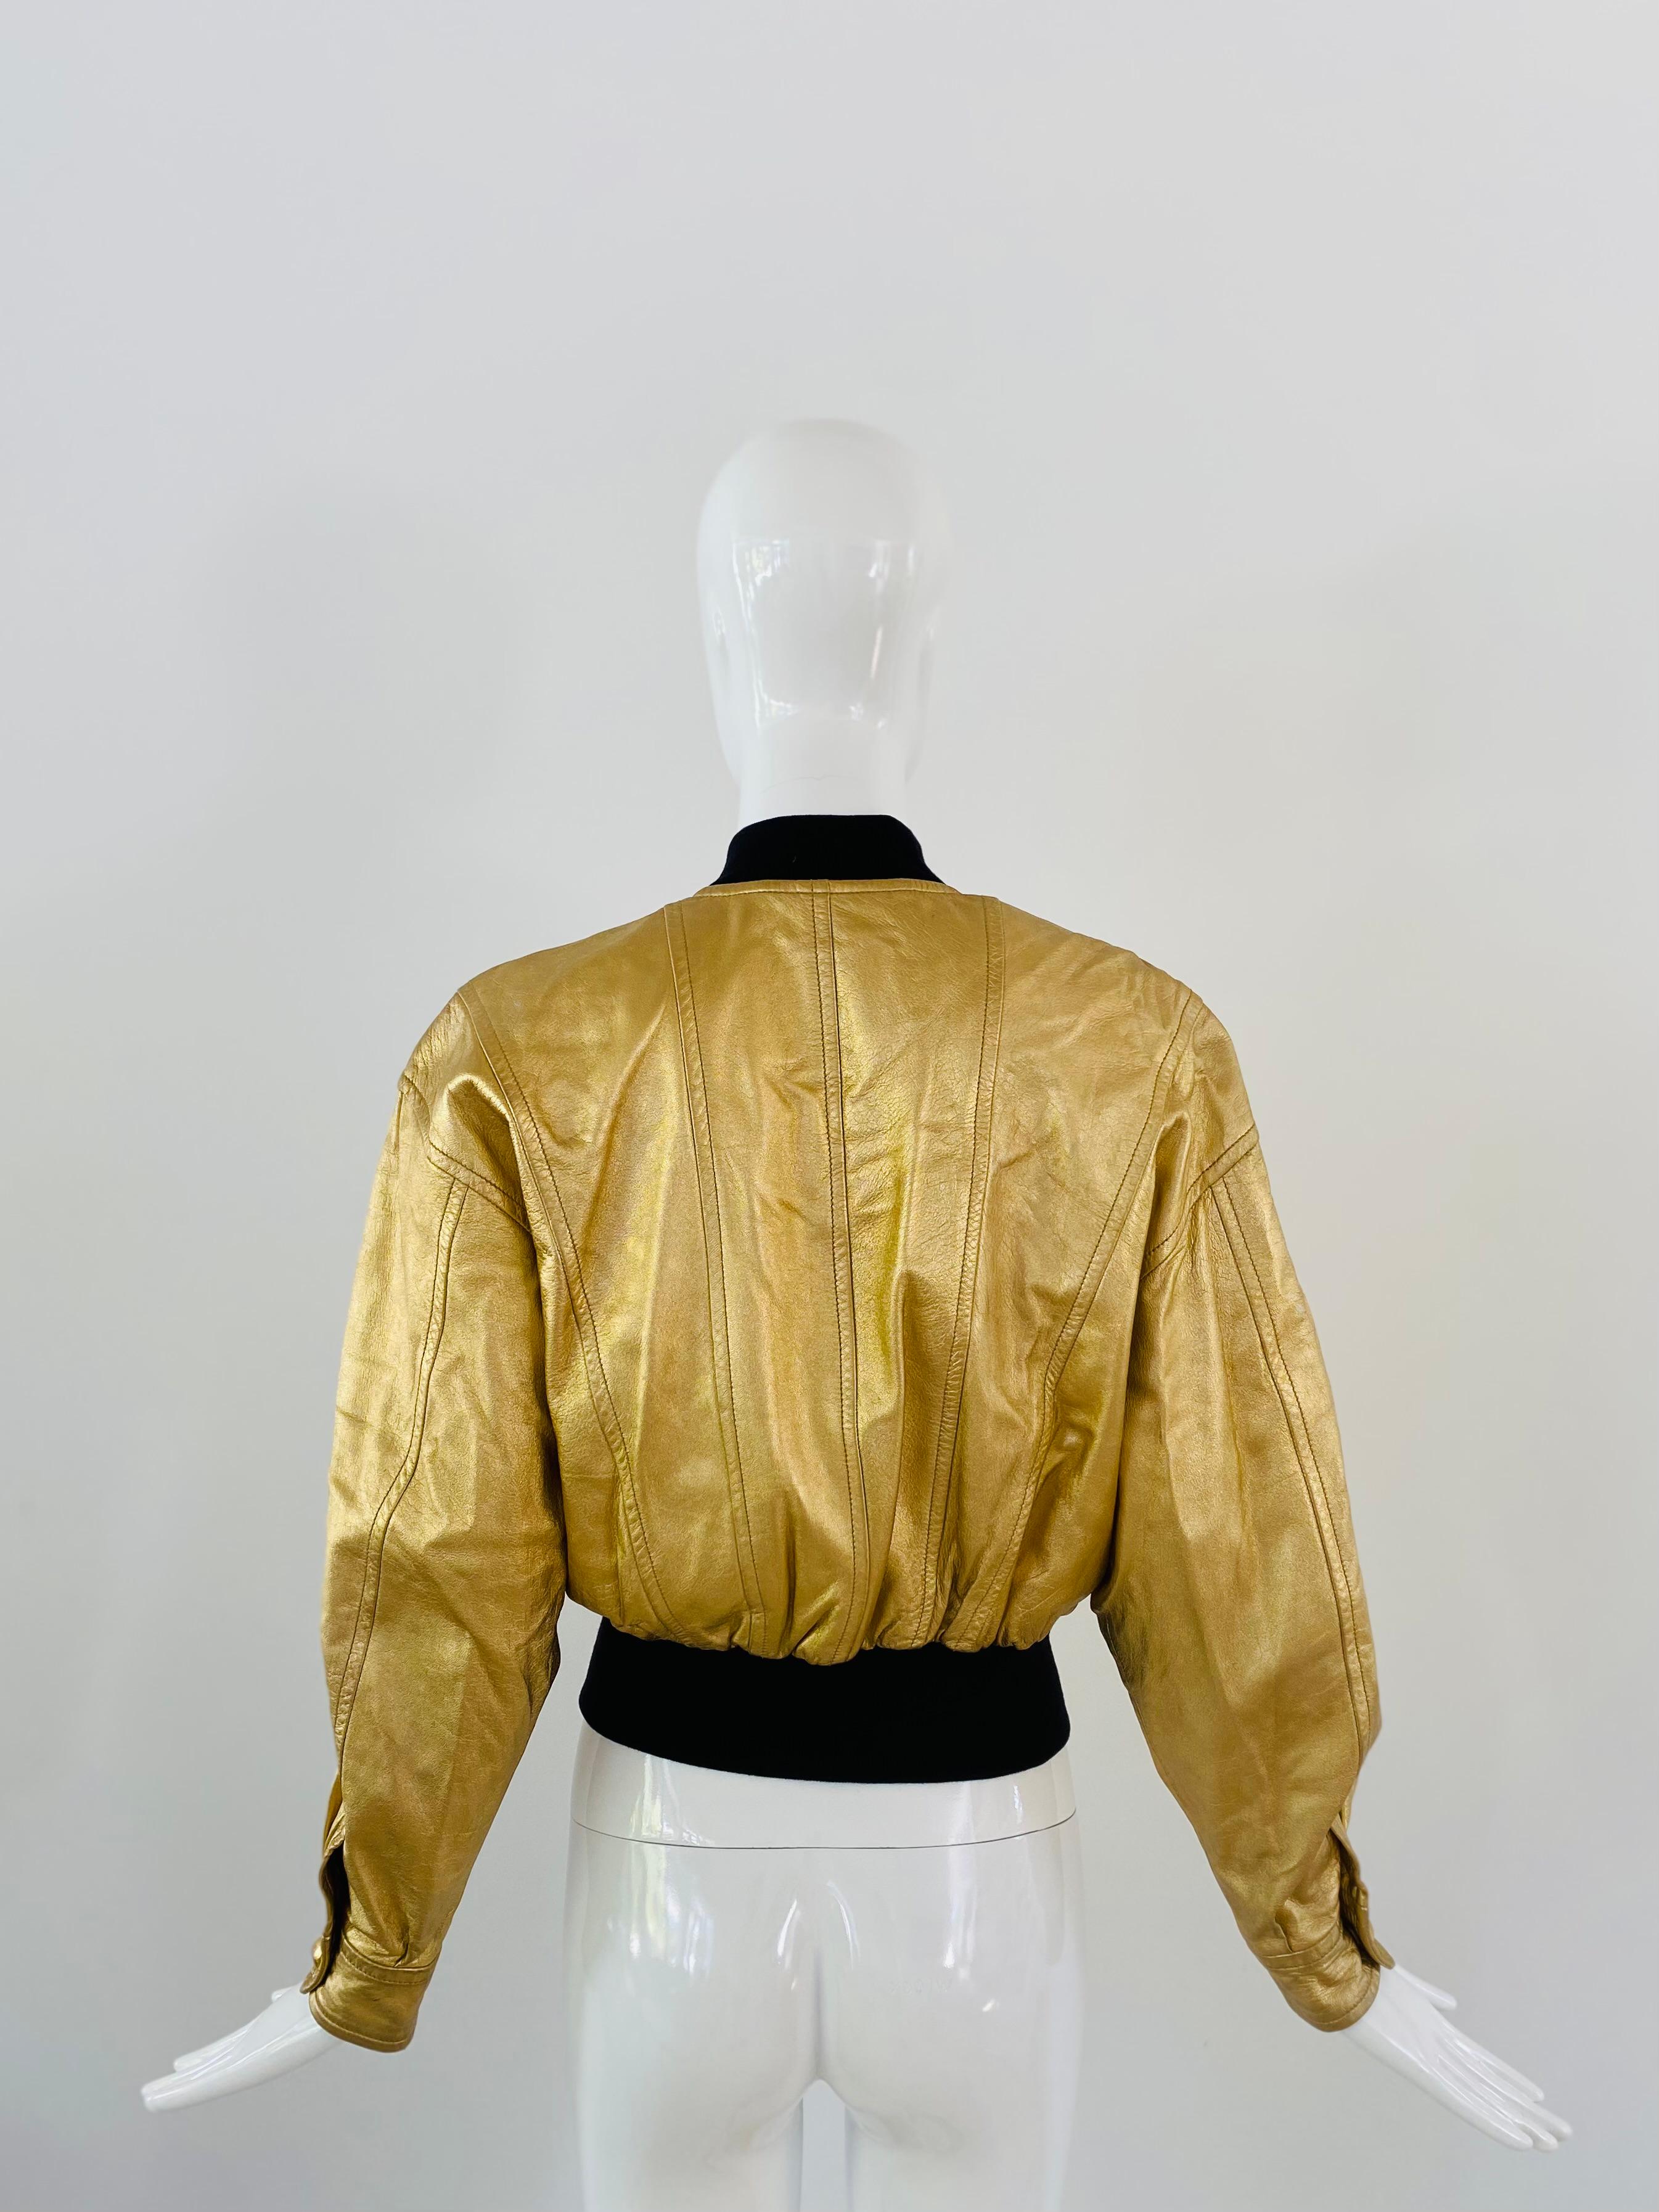 Veste bombardier en cuir Escada des années 1990, en cuir doré avec étoiles brodées, boutons pression dorés et ceinture extensible. L'or du cuir s'est un peu estompé et un trou a été fait dans la doublure intérieure de la veste, qui a été rapiécée.